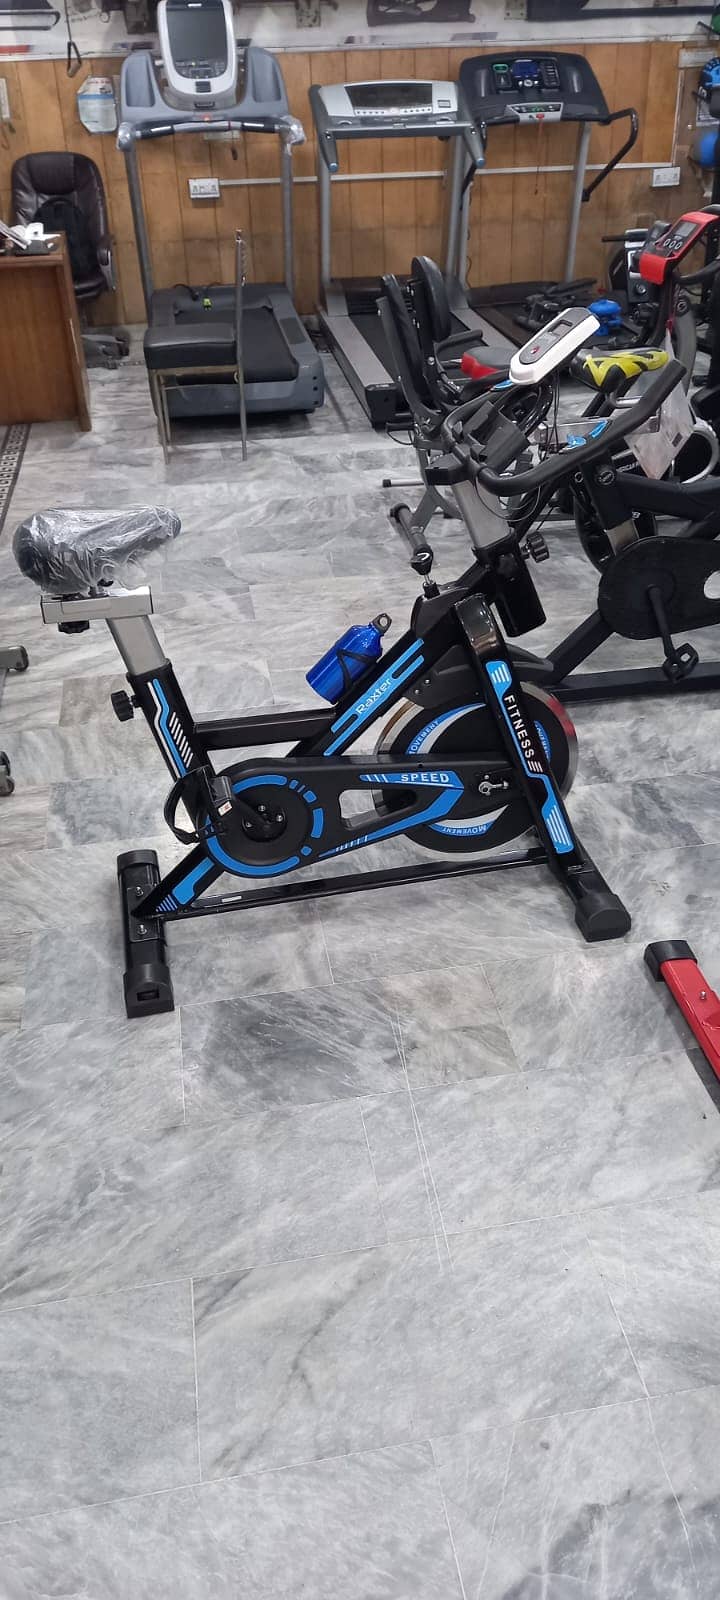 Exercise Spin bike, Recumbent Bike, Up Right Bike, treadmill, dumbbell 9